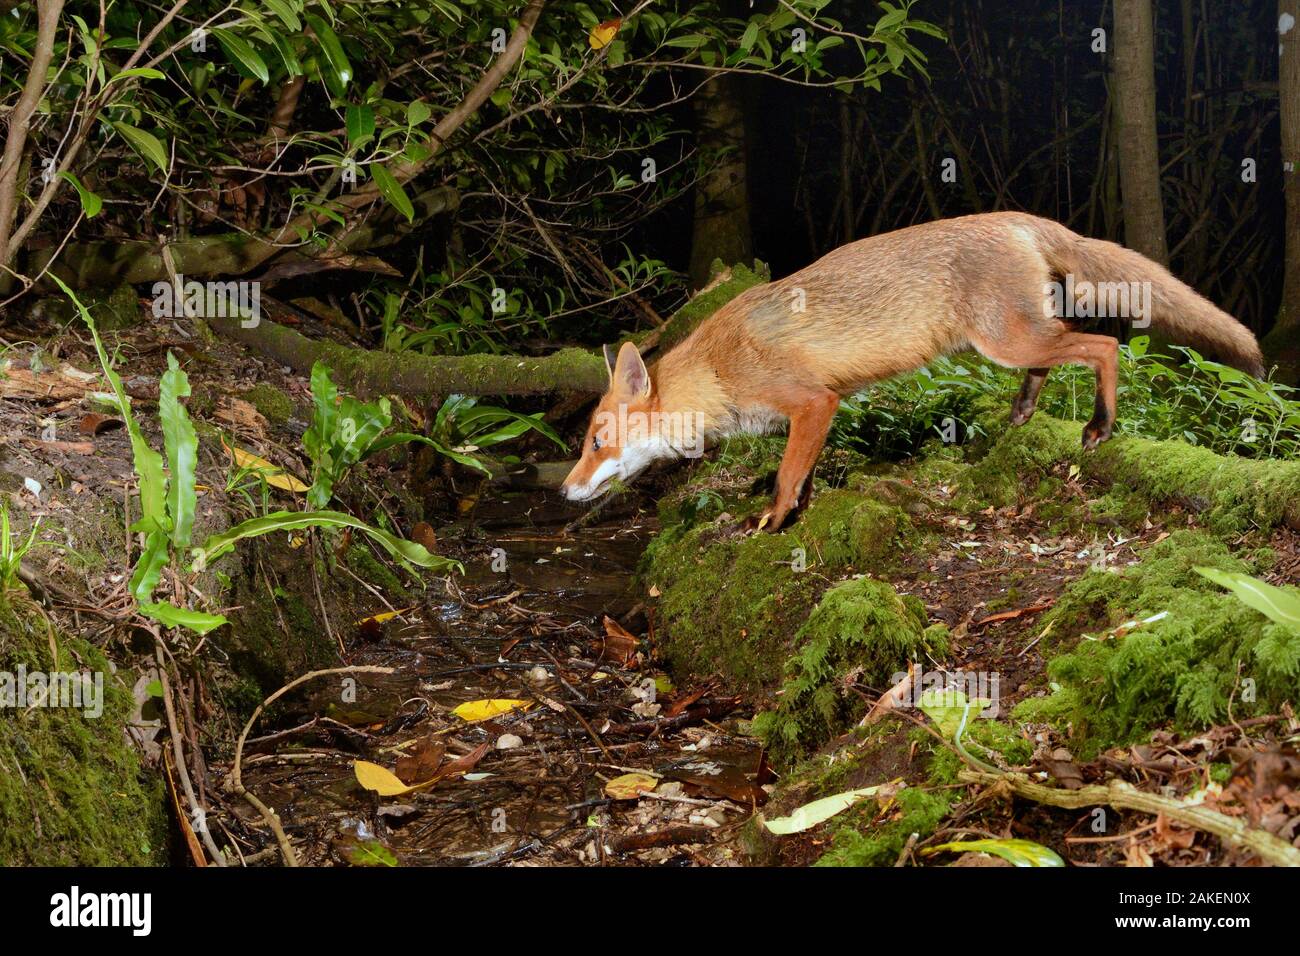 Le renard roux (Vulpes vulpes) visiter woodland stream à boire la nuit. Piège de l'appareil photo de l'image. Près de Bath, Angleterre, Royaume-Uni. De juin. Banque D'Images